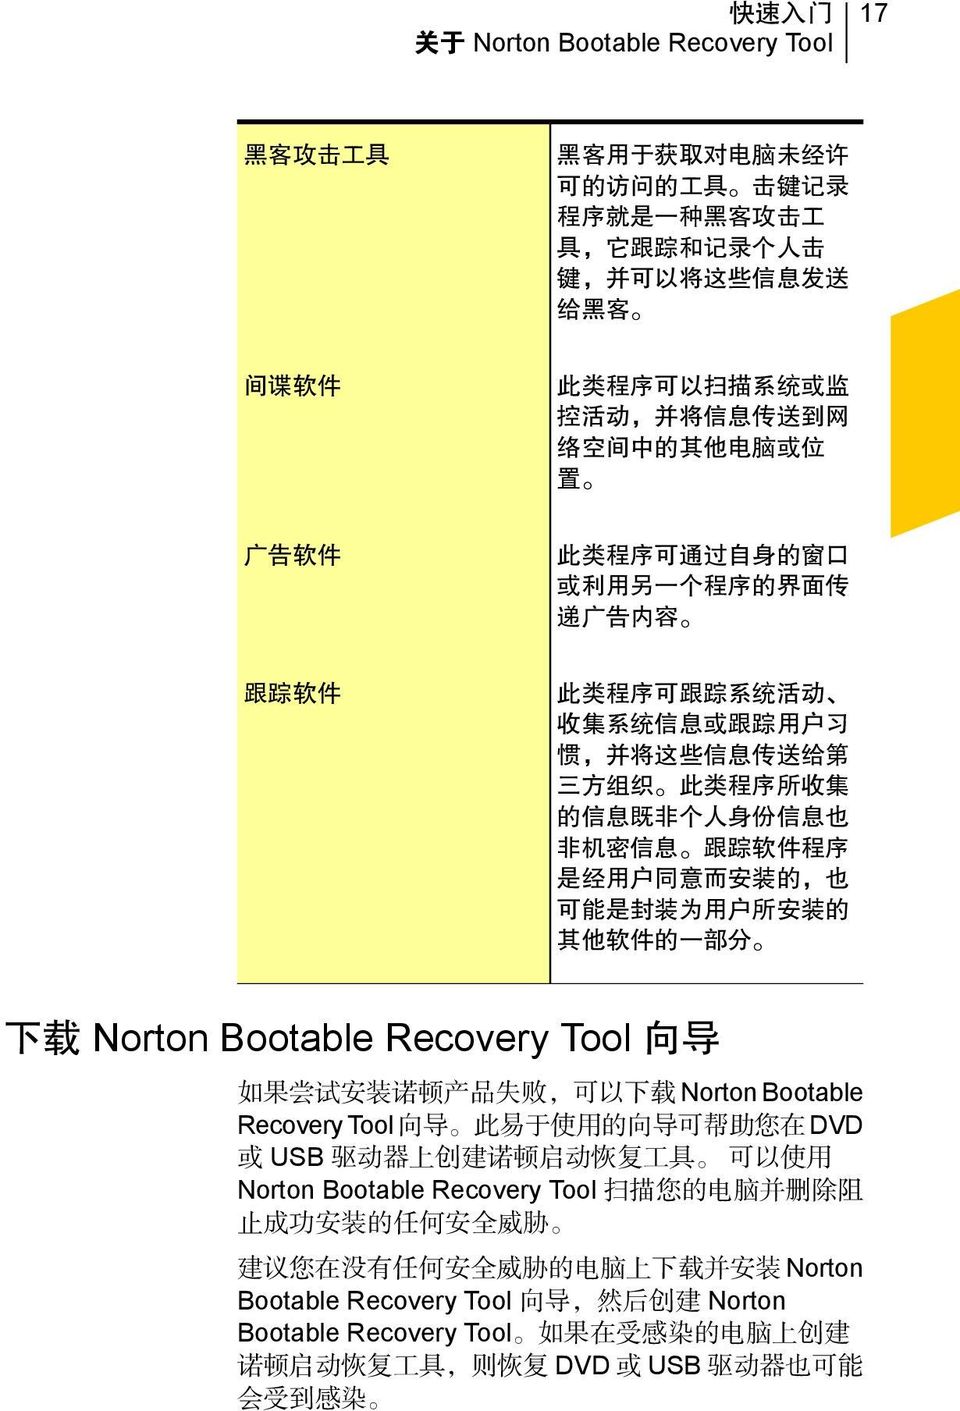 方 组 织 此 类 程 序 所 收 集 的 信 息 既 非 个 人 身 份 信 息 也 非 机 密 信 息 跟 踪 软 件 程 序 是 经 用 户 同 意 而 安 装 的, 也 可 能 是 封 装 为 用 户 所 安 装 的 其 他 软 件 的 一 部 分 下 载 Norton Bootable Recovery Tool 向 导 如 果 尝 试 安 装 诺 顿 产 品 失 败, 可 以 下 载